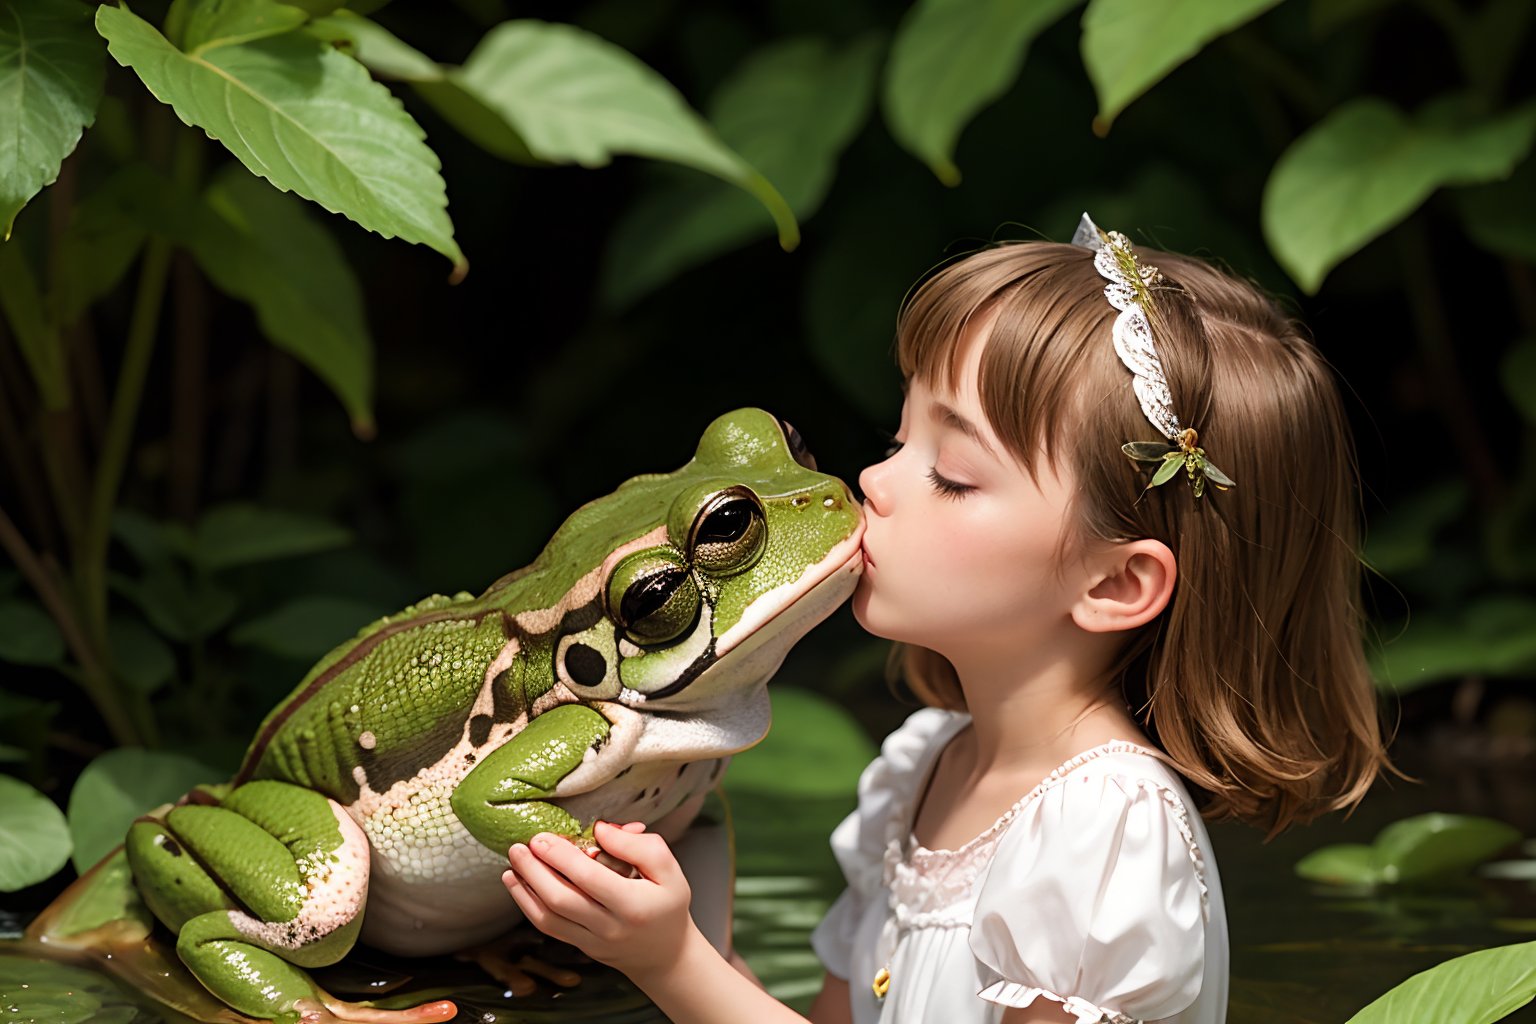 fairyland princess kissing a frog